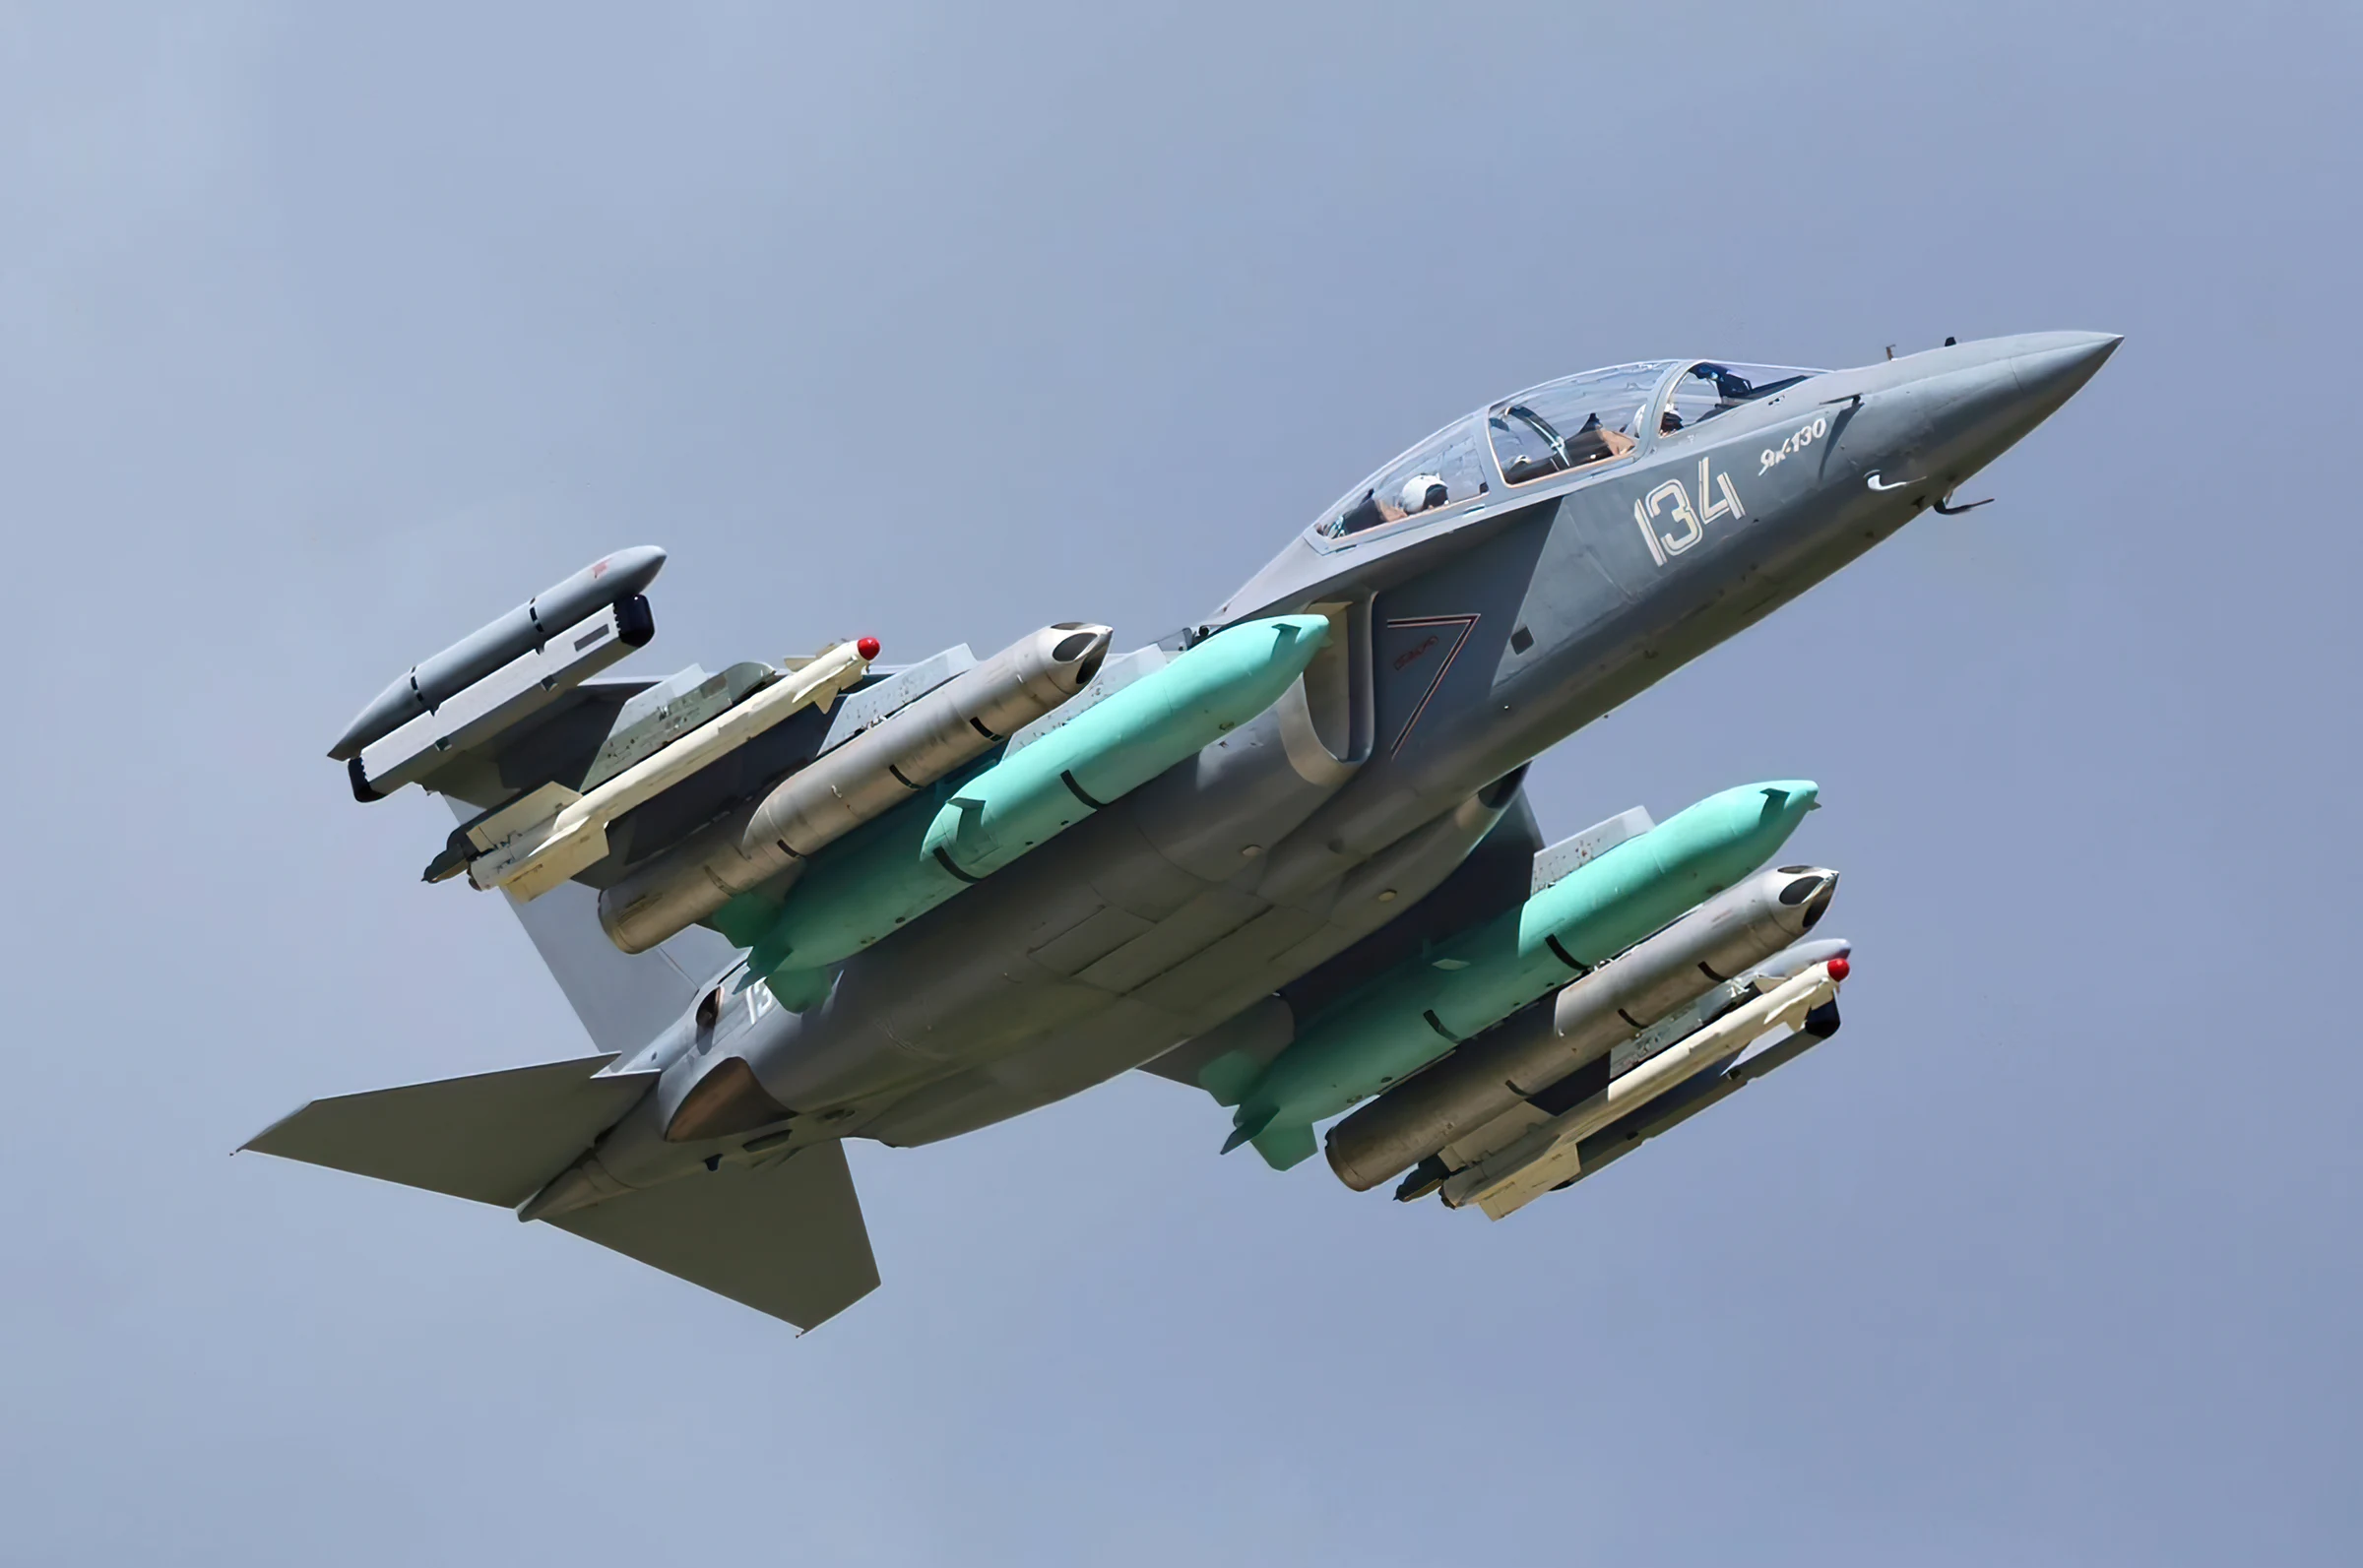 Rusia refuerza la aeronáutica de Irán con el Yak-130 “Mitten”